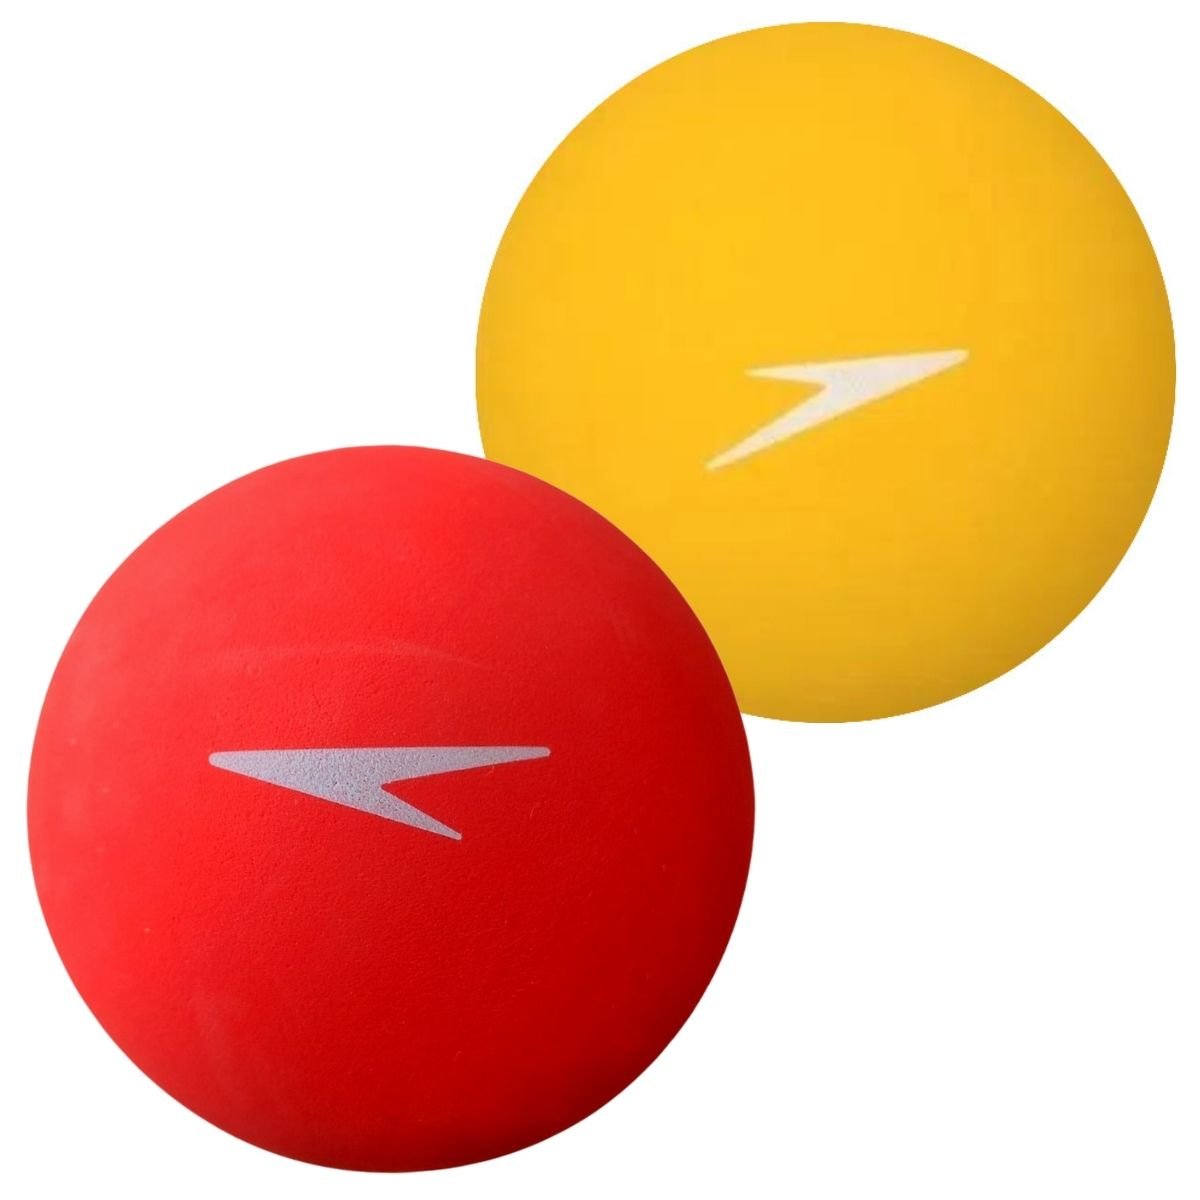 Bola De frescobol Speedo Profissional 2 Unidades - Amarelo/Vermelho - 1